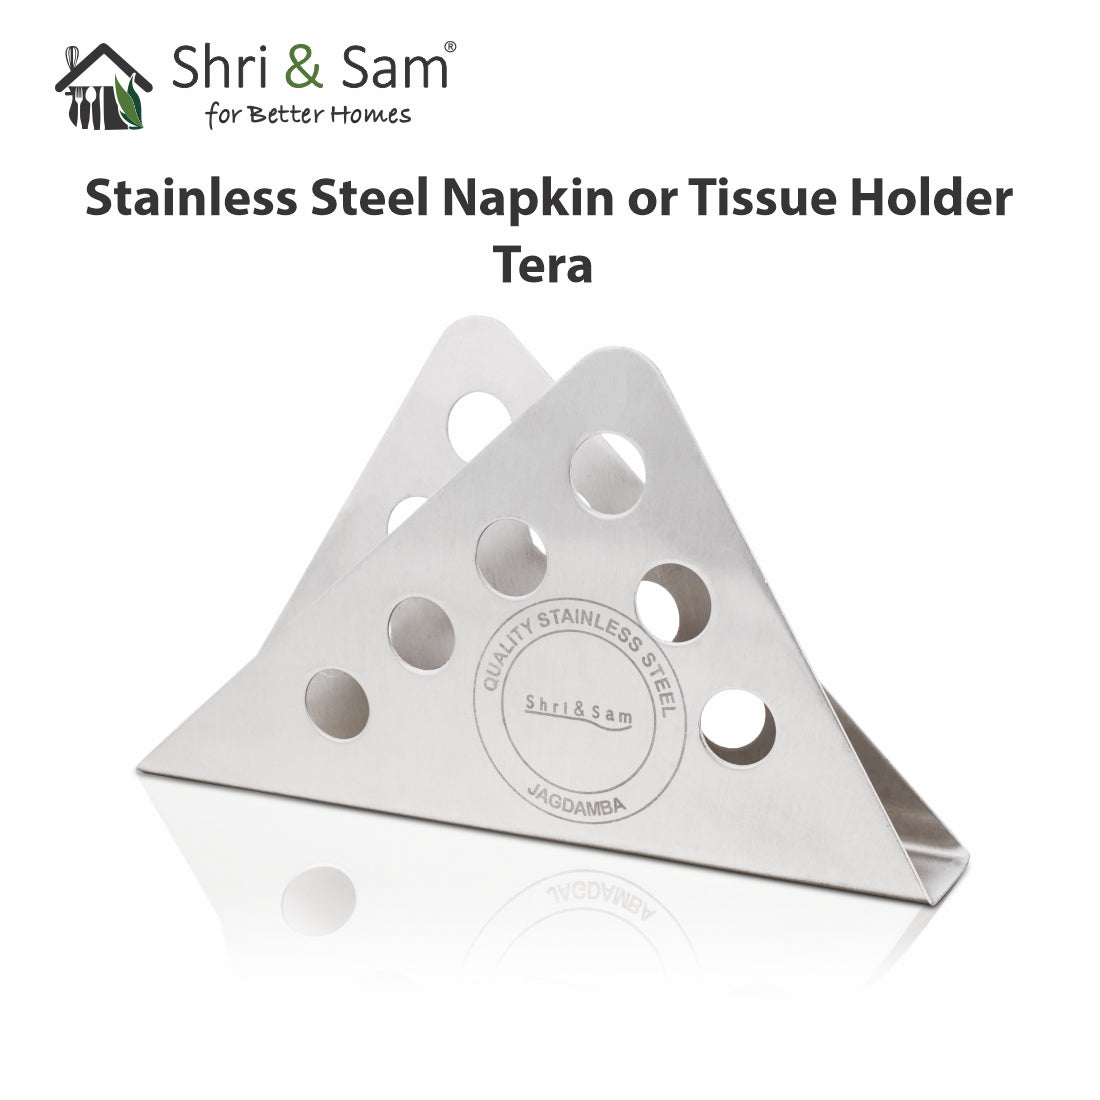 Stainless Steel Napkin or Tissue Holder Tera